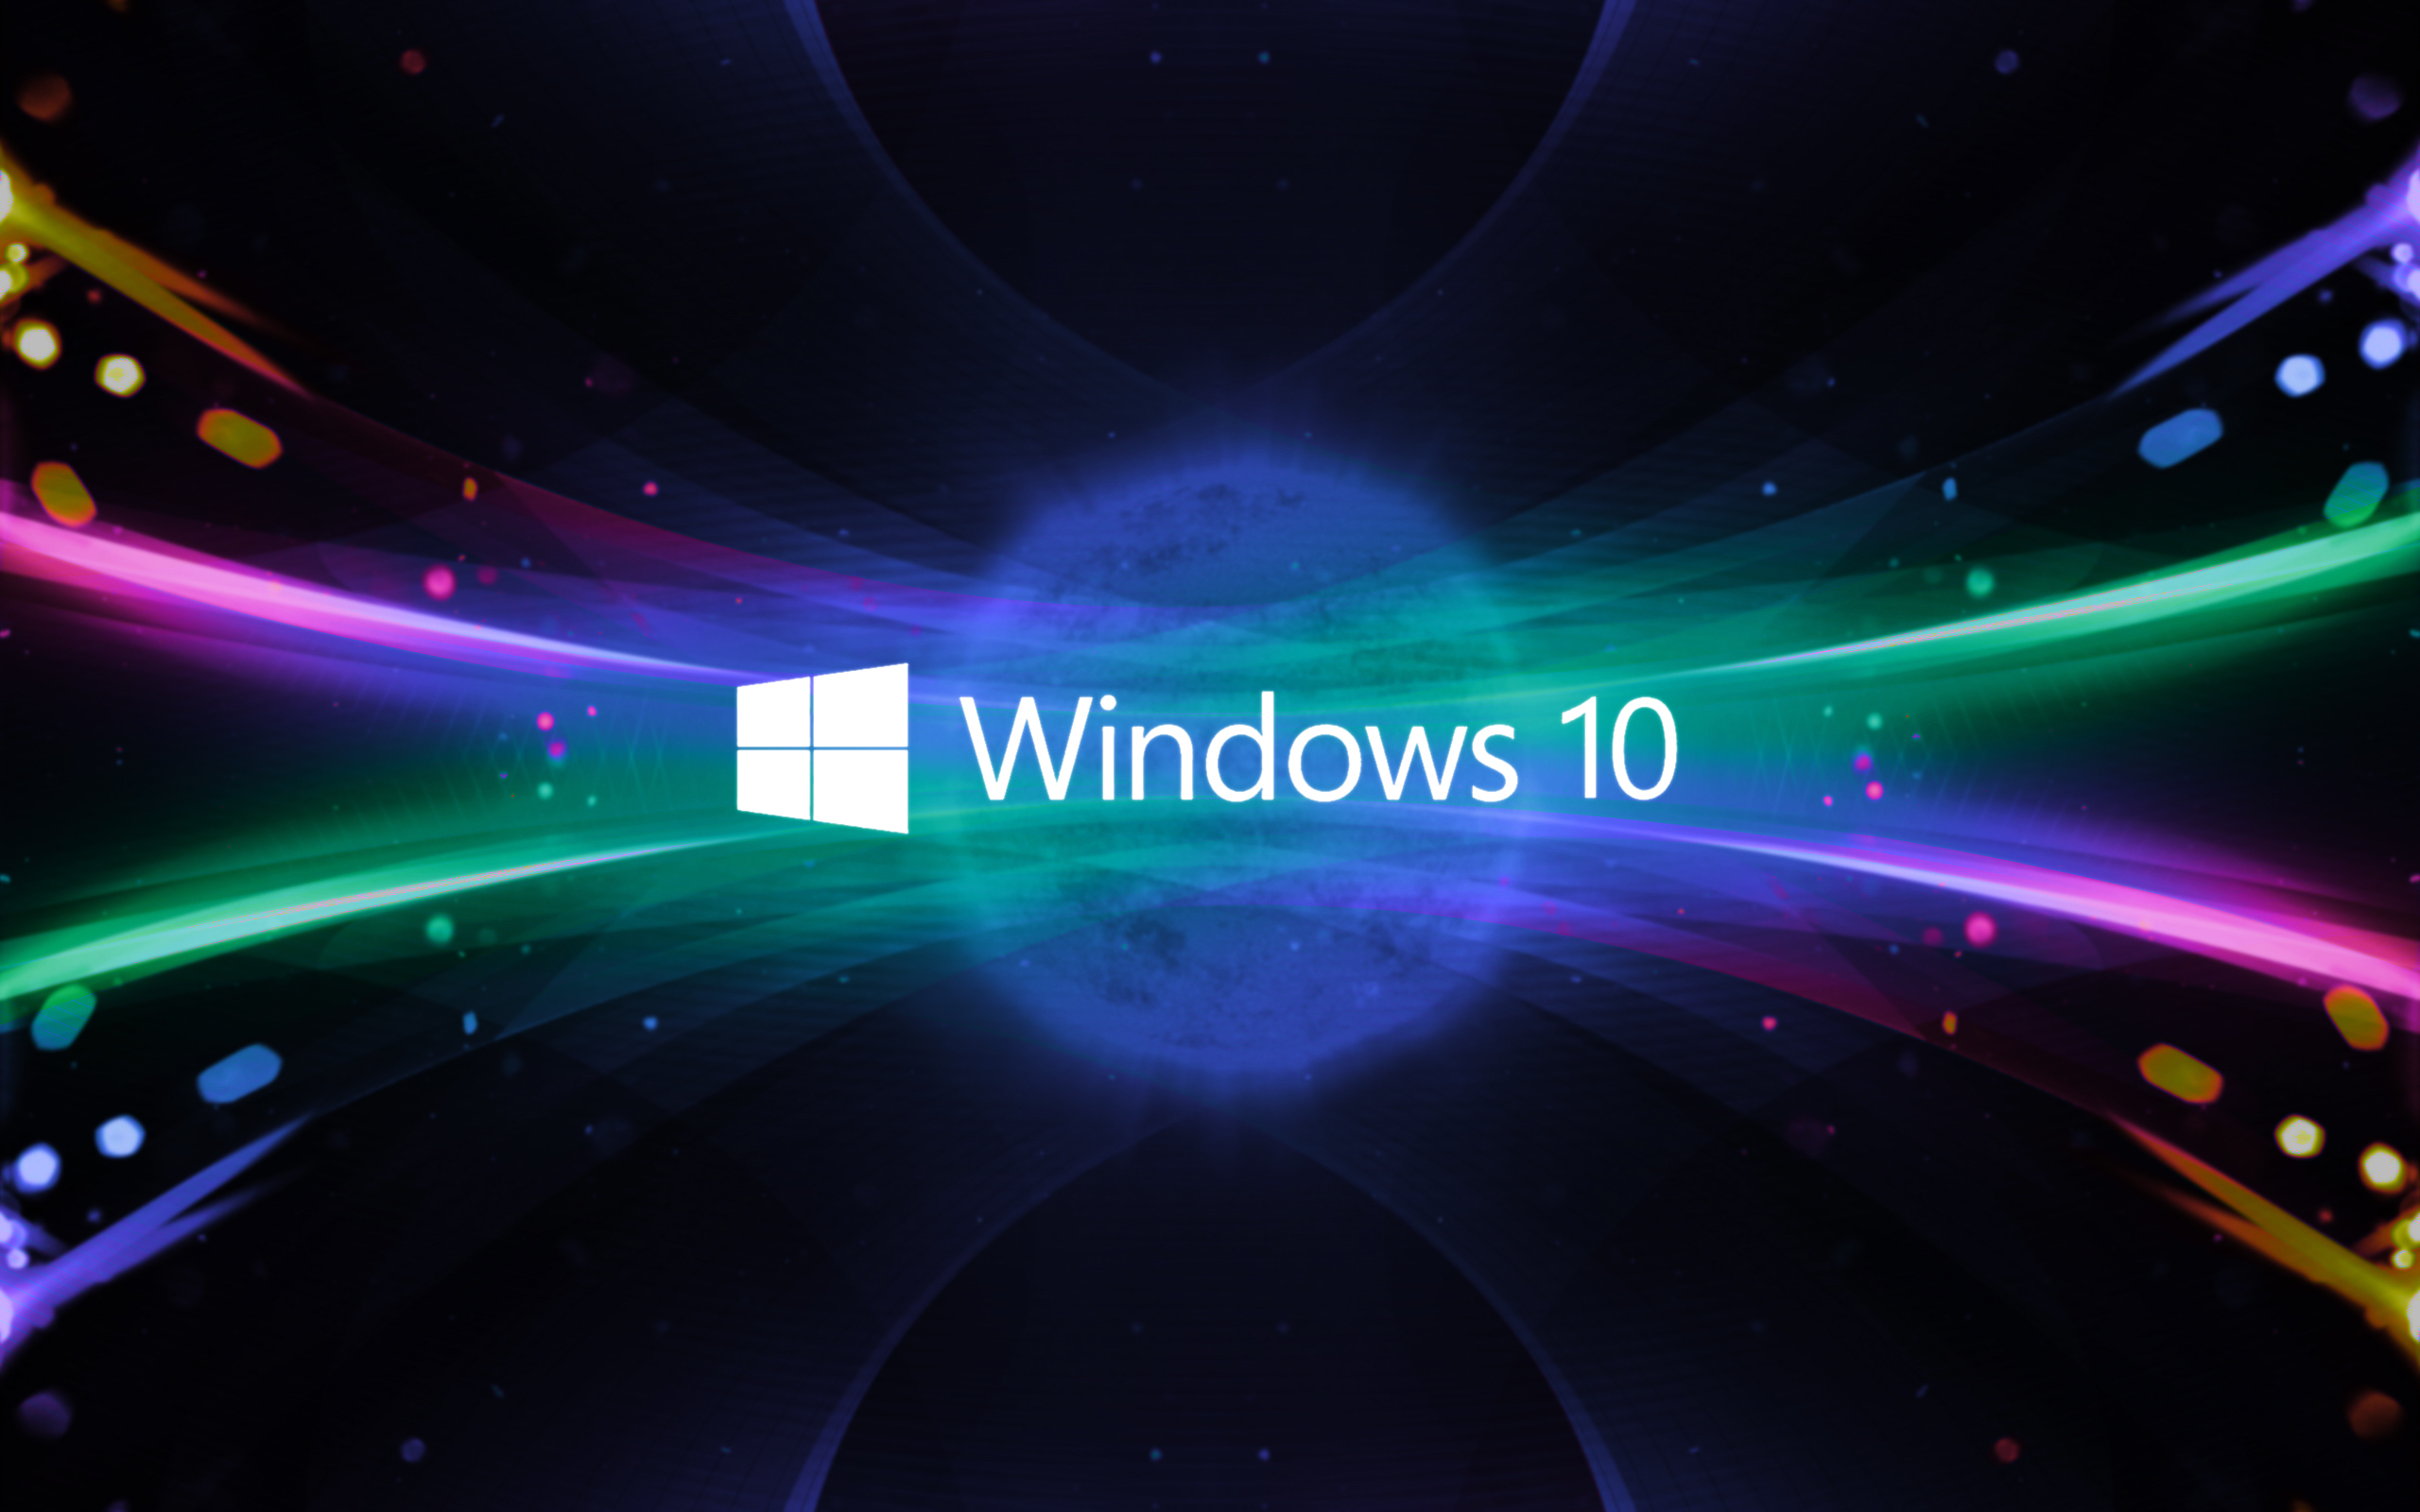 Không nên nâng cấp Windows 10: Bạn lo lắng về việc nâng cấp lên Windows 10 và không biết liệu mình nên tiếp tục hay không? Đừng lo lắng, chúng tôi sẽ giúp bạn đưa ra quyết định đúng đắn. Hãy đến xem những ảnh liên quan đến chủ đề này để có thể tự tin quyết định cho mình một cách chính xác.